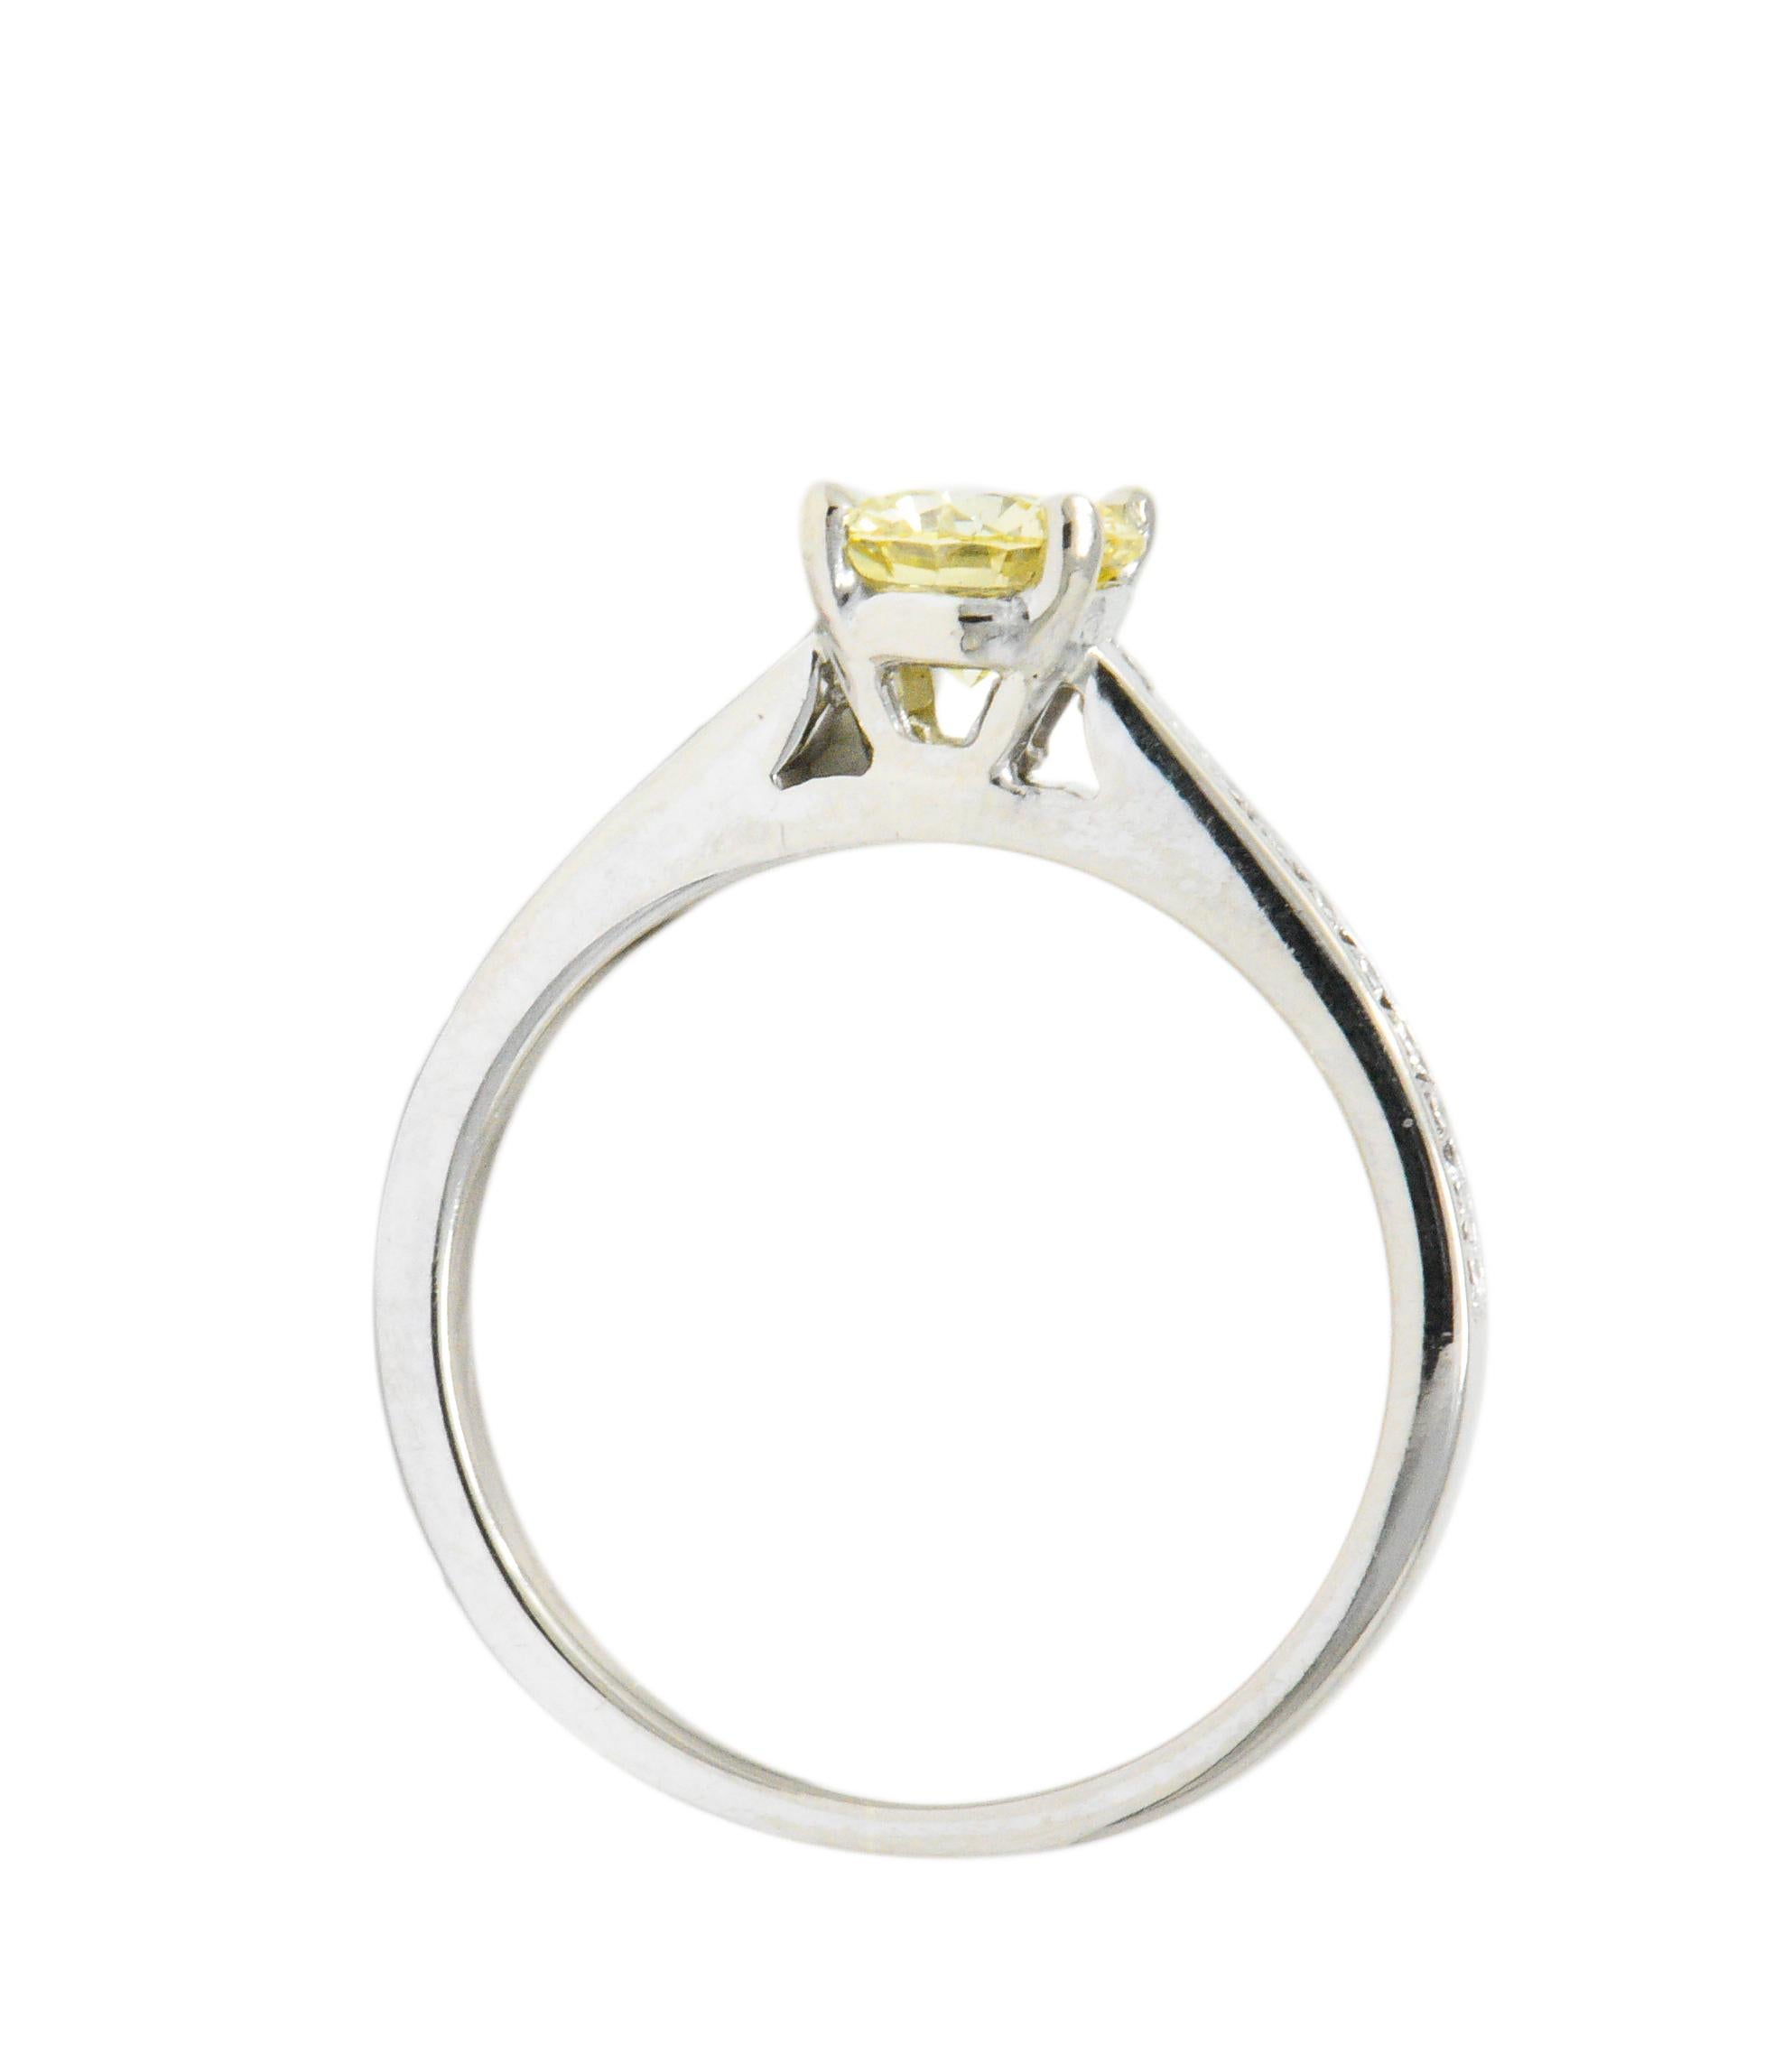 Contemporary Modern 0.79 Carat Fancy Yellow Diamond 14 Karat White Gold Engagement Ring GIA